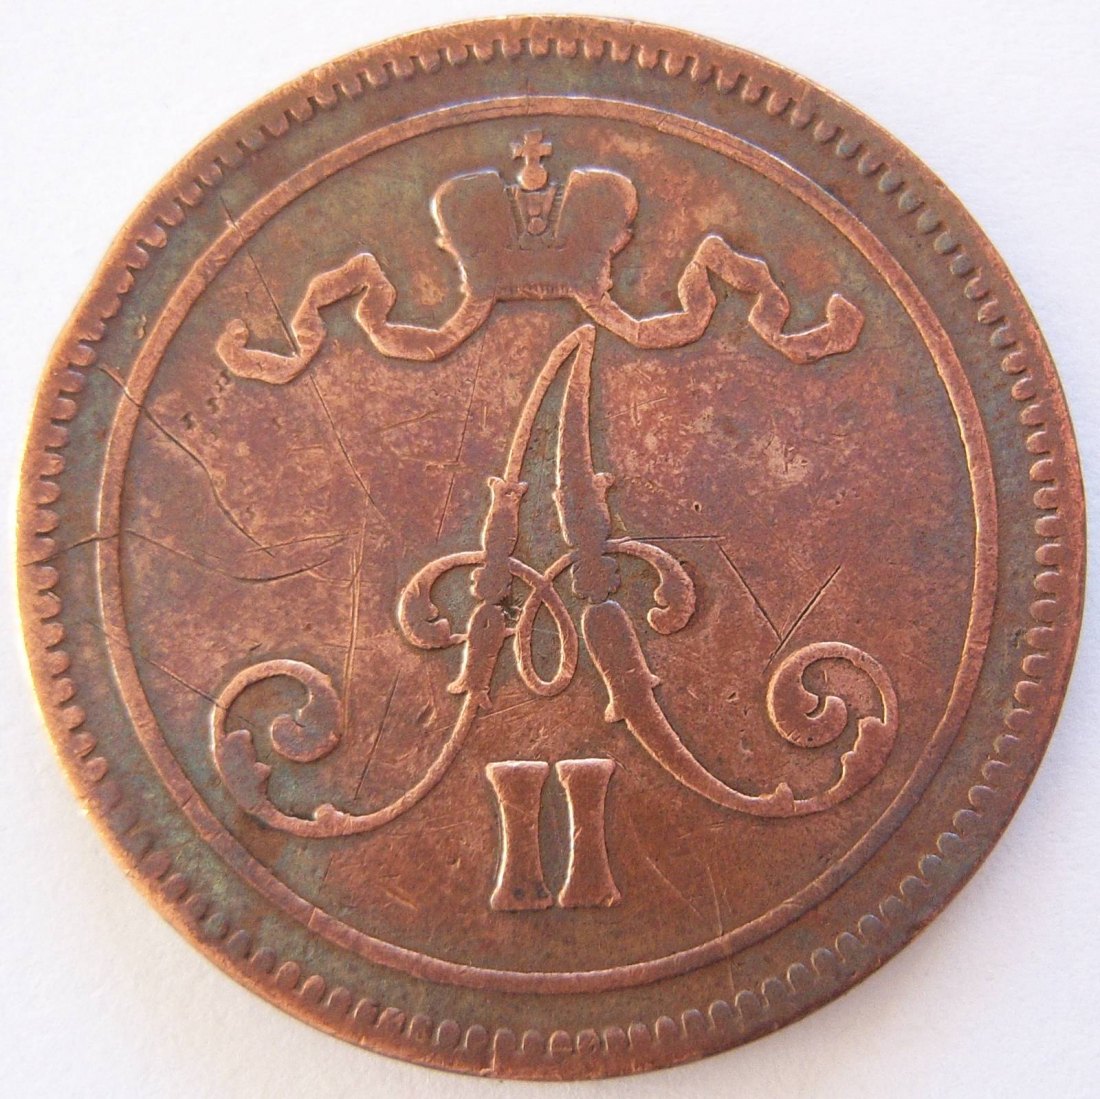  Finnland 10 Penniä 1865   